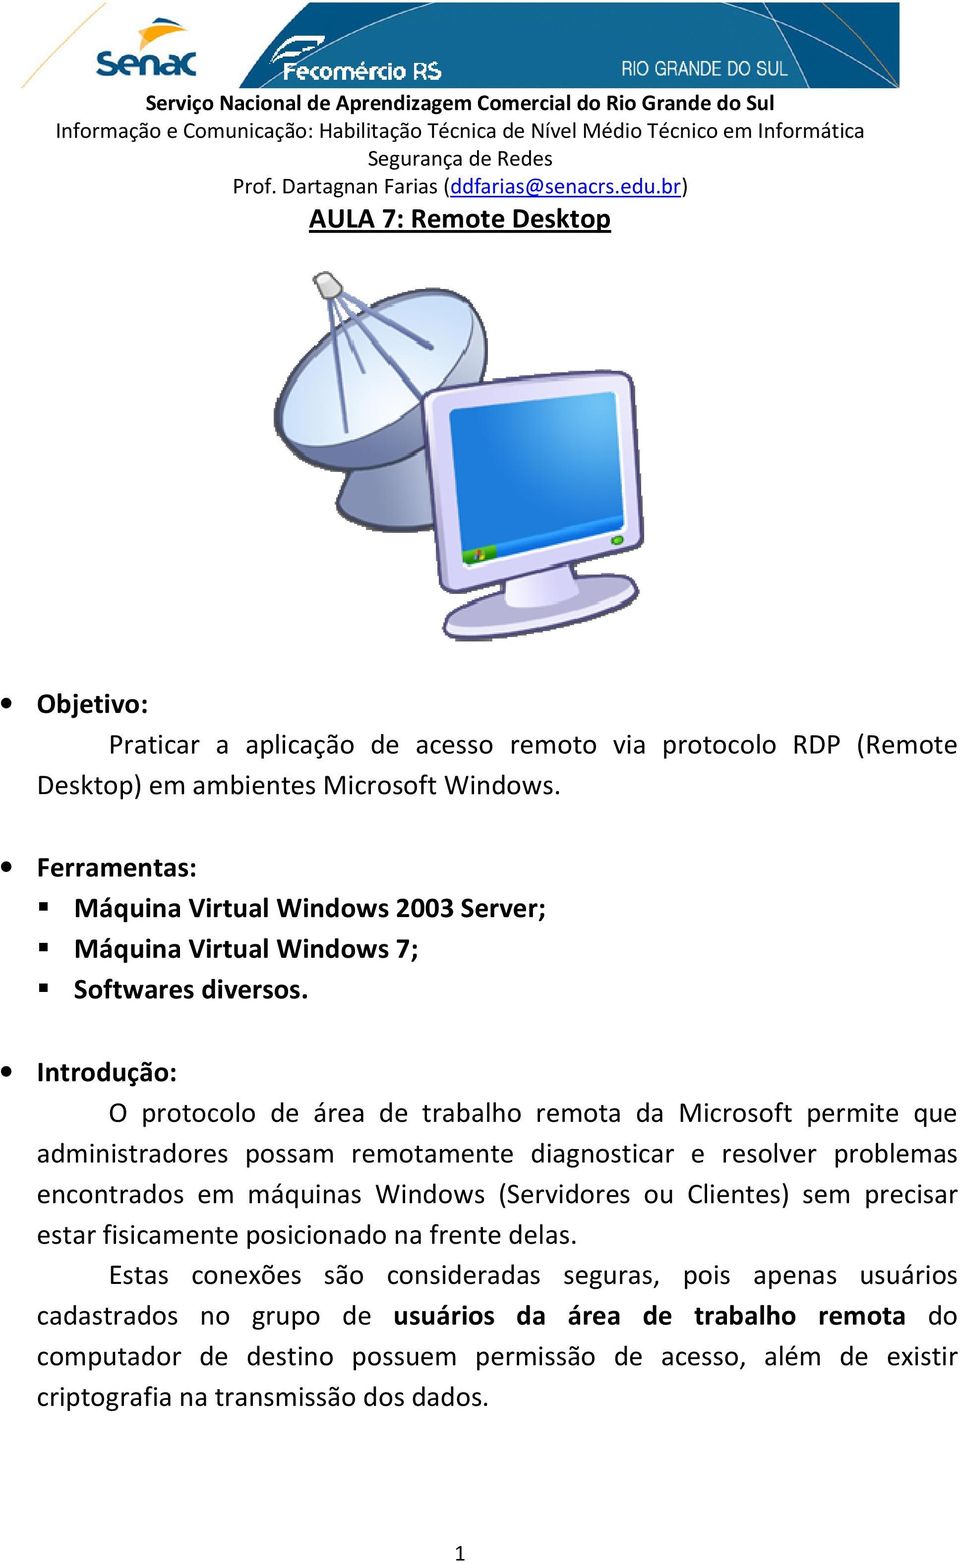 Introdução: O protocolo de área de trabalho remota da Microsoft permite que administradores possam remotamente diagnosticar e resolver problemas encontrados em máquinas Windows